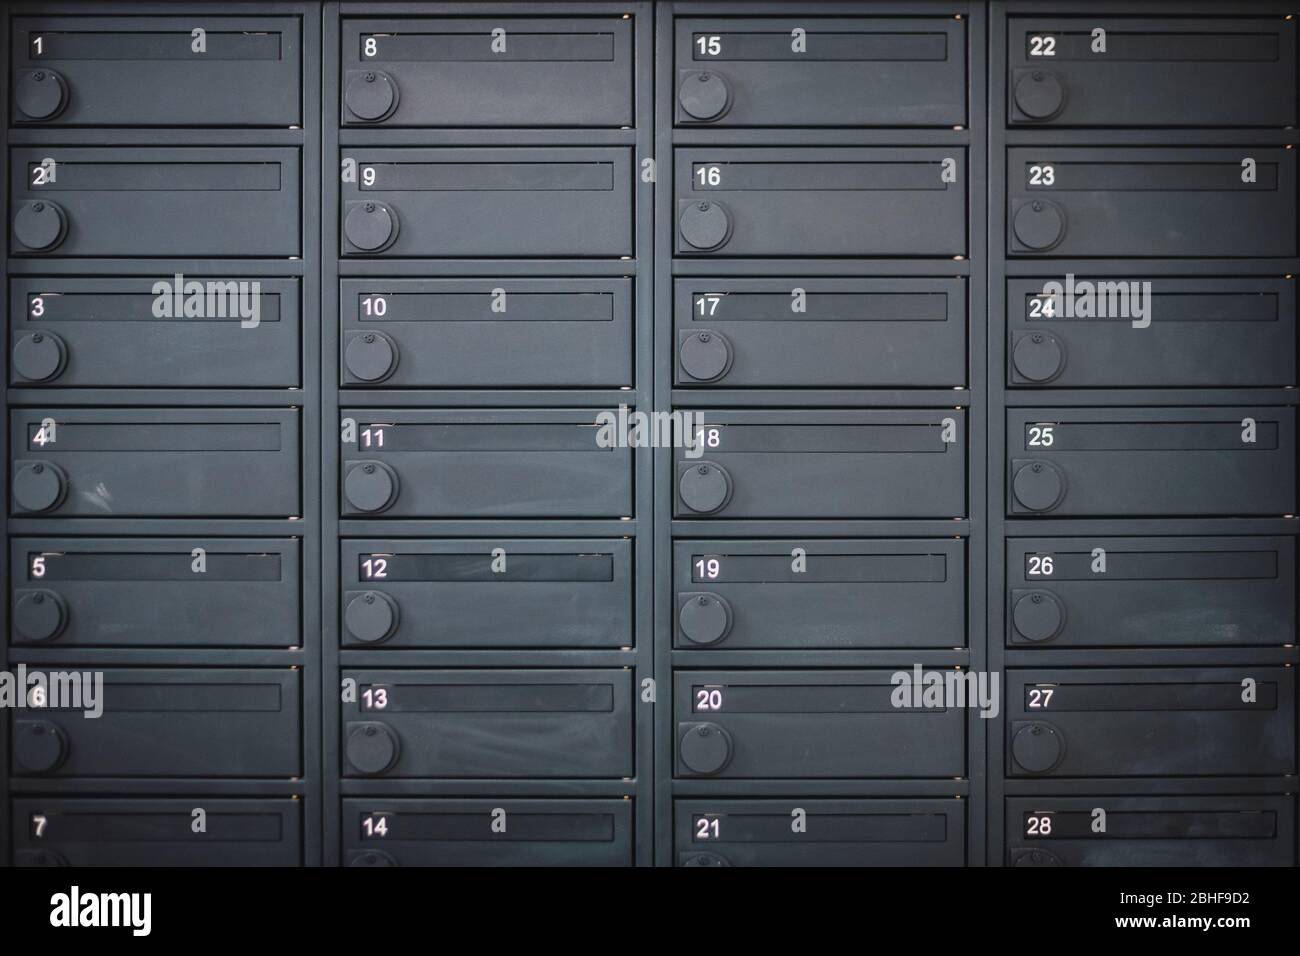 Eine Reihe von Metalldepot oder Briefkasten in einer dunkelgrauen Farbe in  einer Wohnung Stockfotografie - Alamy